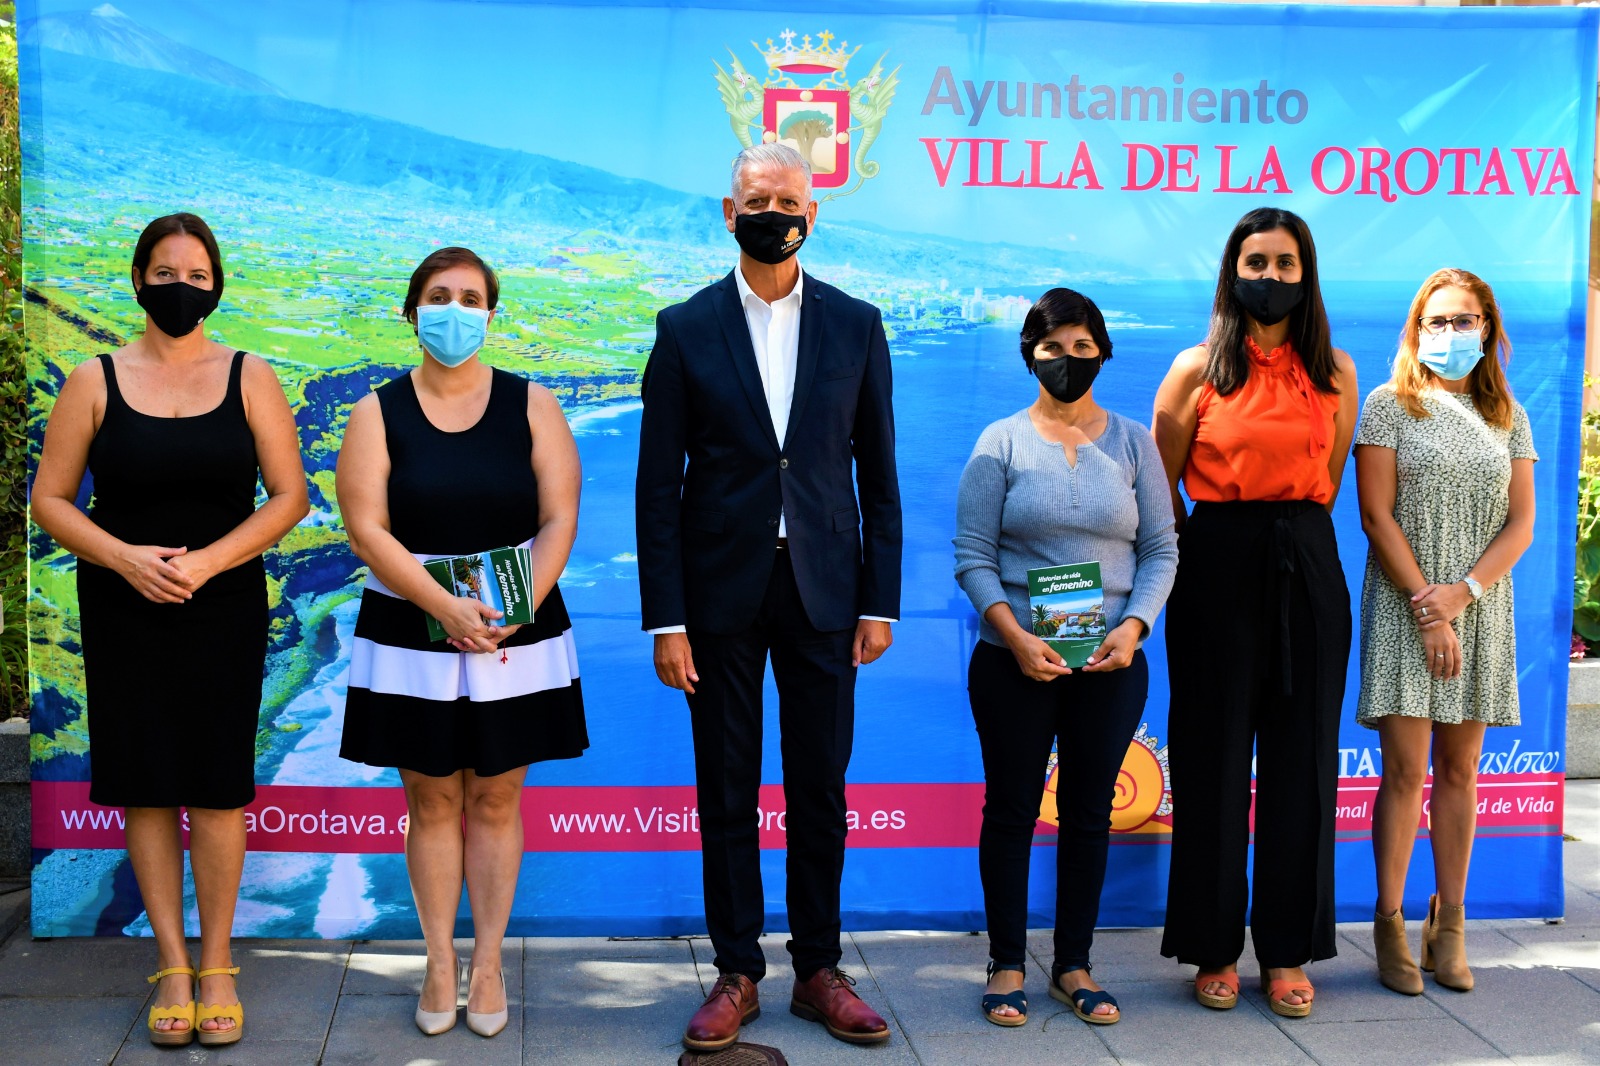 El proyecto “Historias de vida en femenino” ha sido coordinado por la Concejalía de Bienestar Social del ayuntamiento orotavense y el área de Juventud e Igualdad del Cabildo de Tenerife.